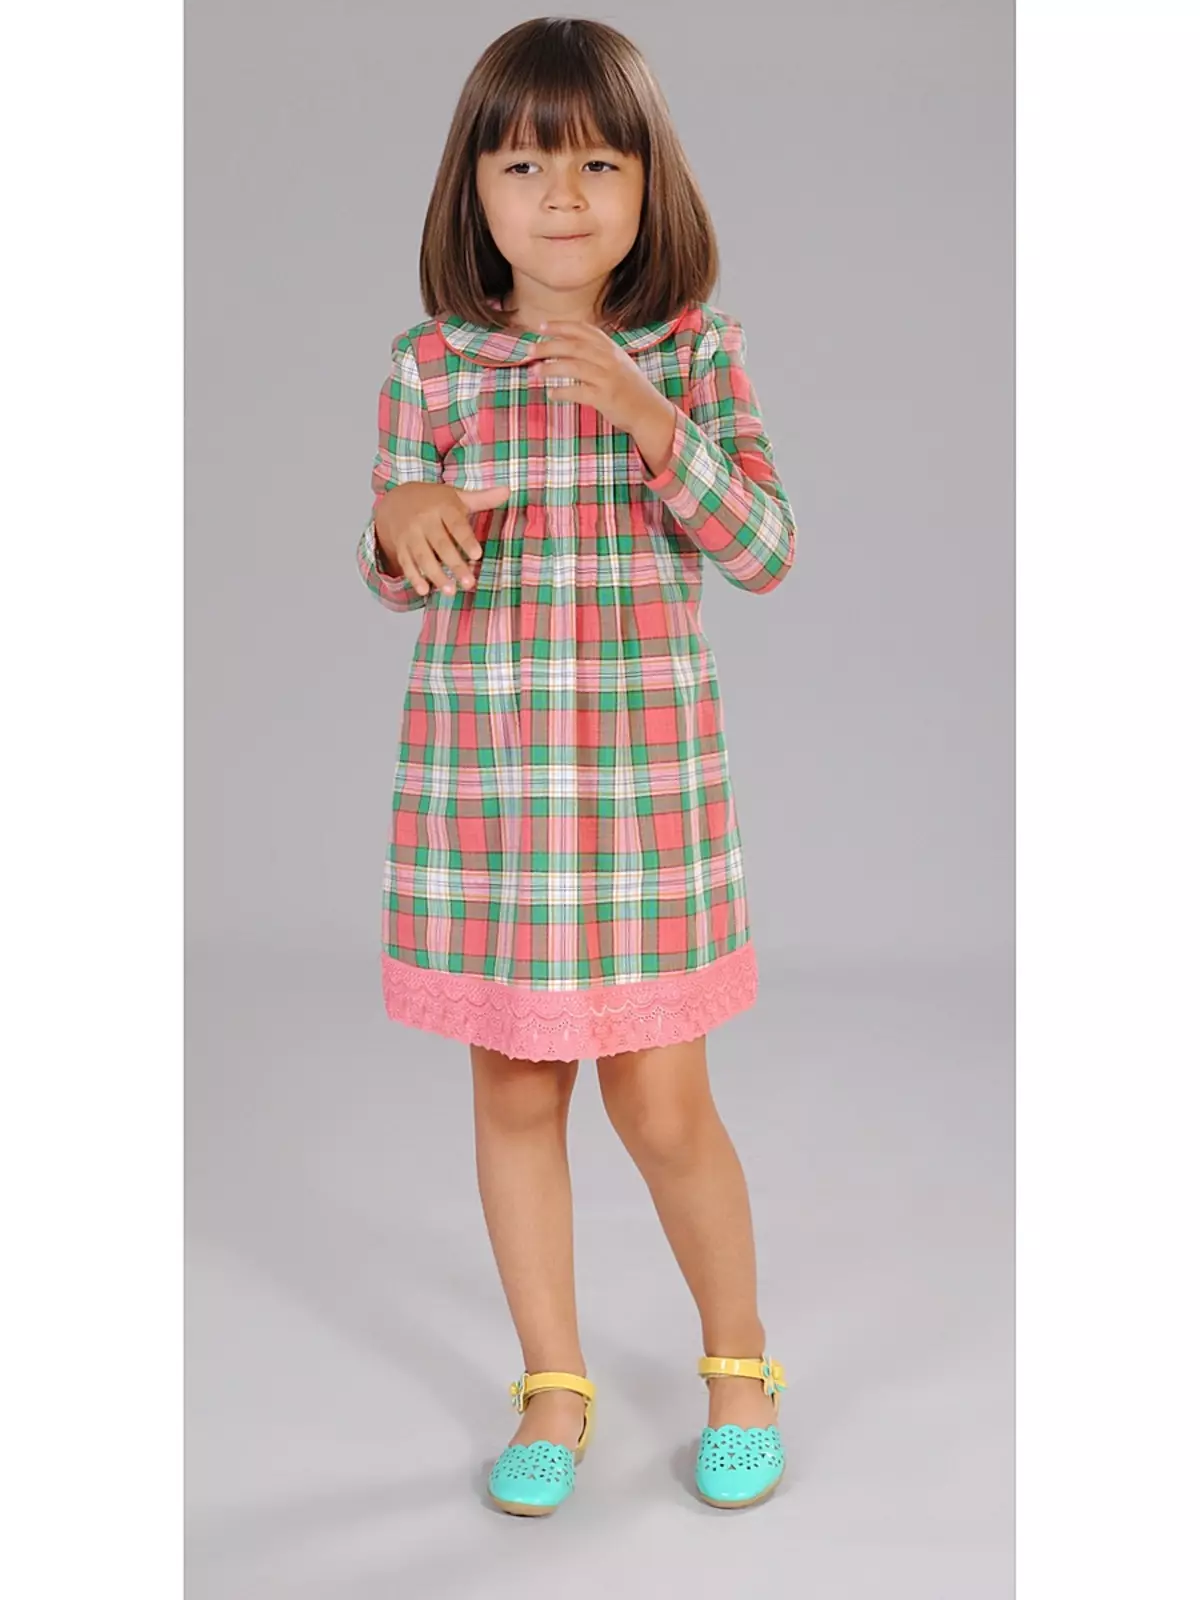 Cutie Susie (52 Fotos): Schuluniform, Kleider, Kostüme und andere Kinderbekleidung für Mädchen 7 Jahre, Produktbewertungen 3792_29